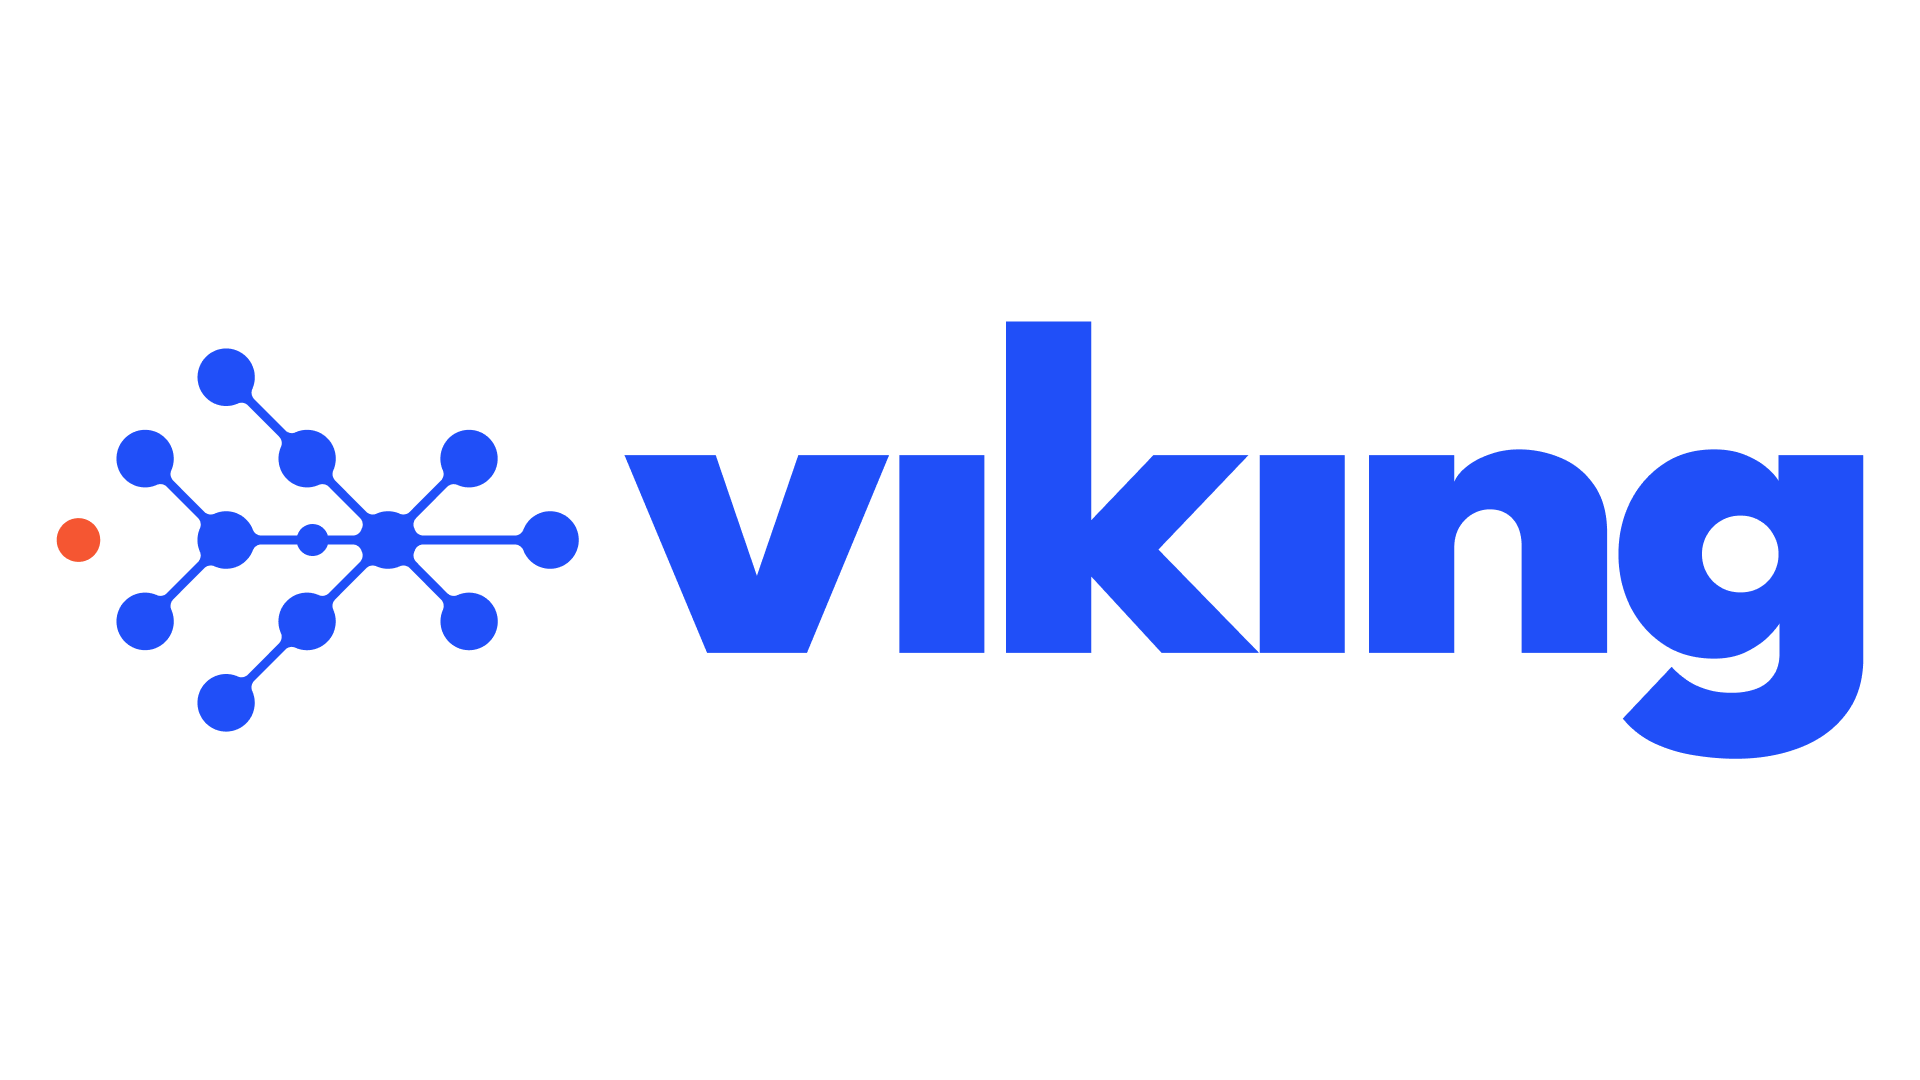 Viking_Blue_Transparent